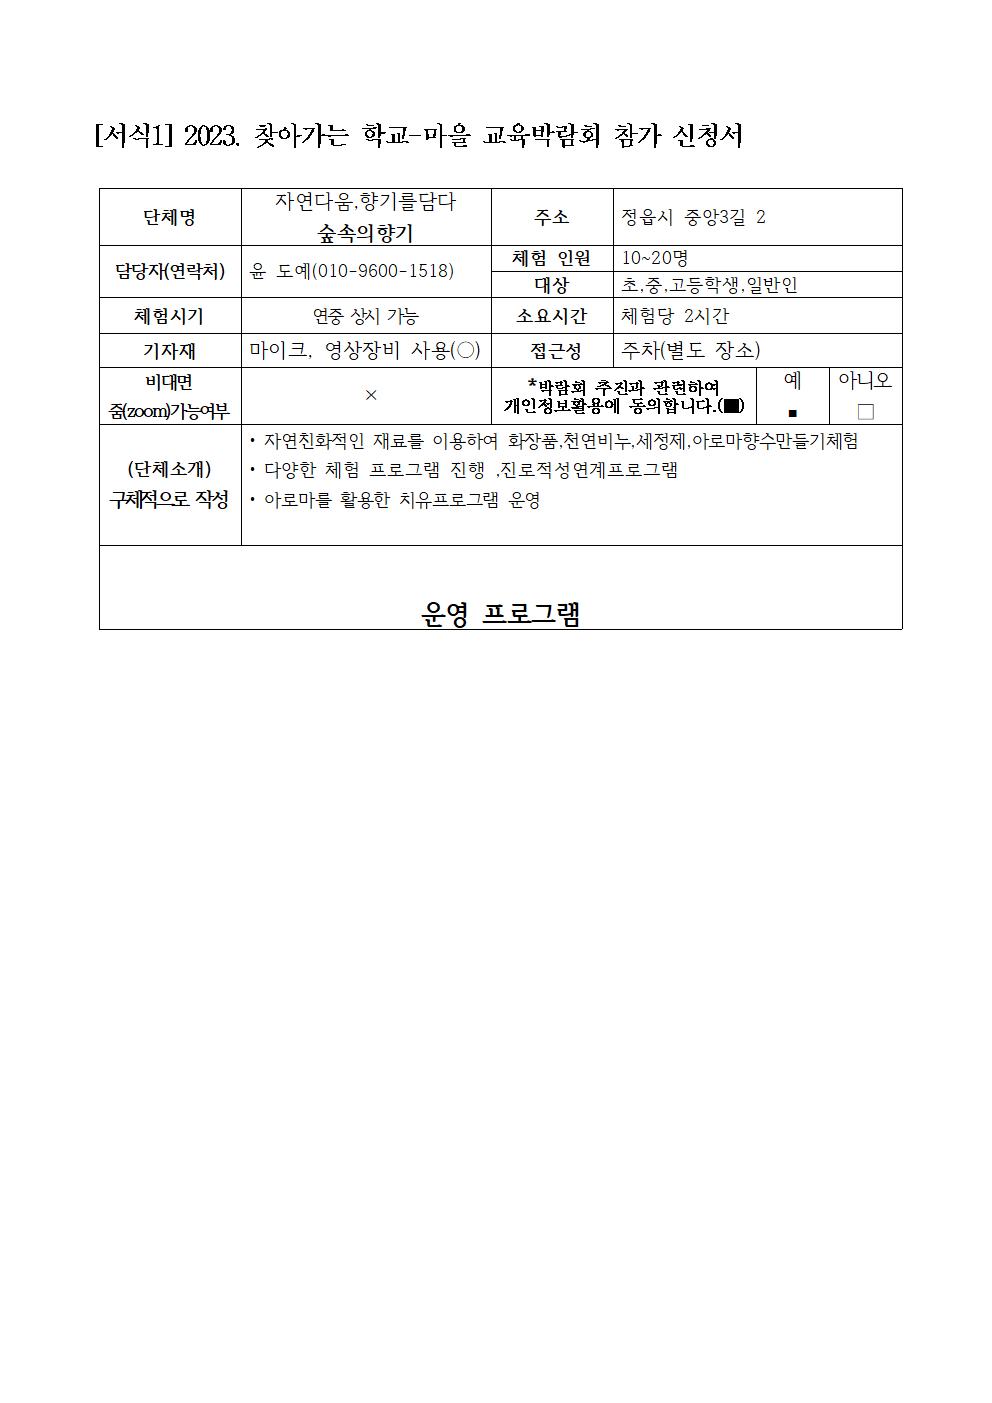 [2023-샘고을교육자원박람회] 참가 신청서001